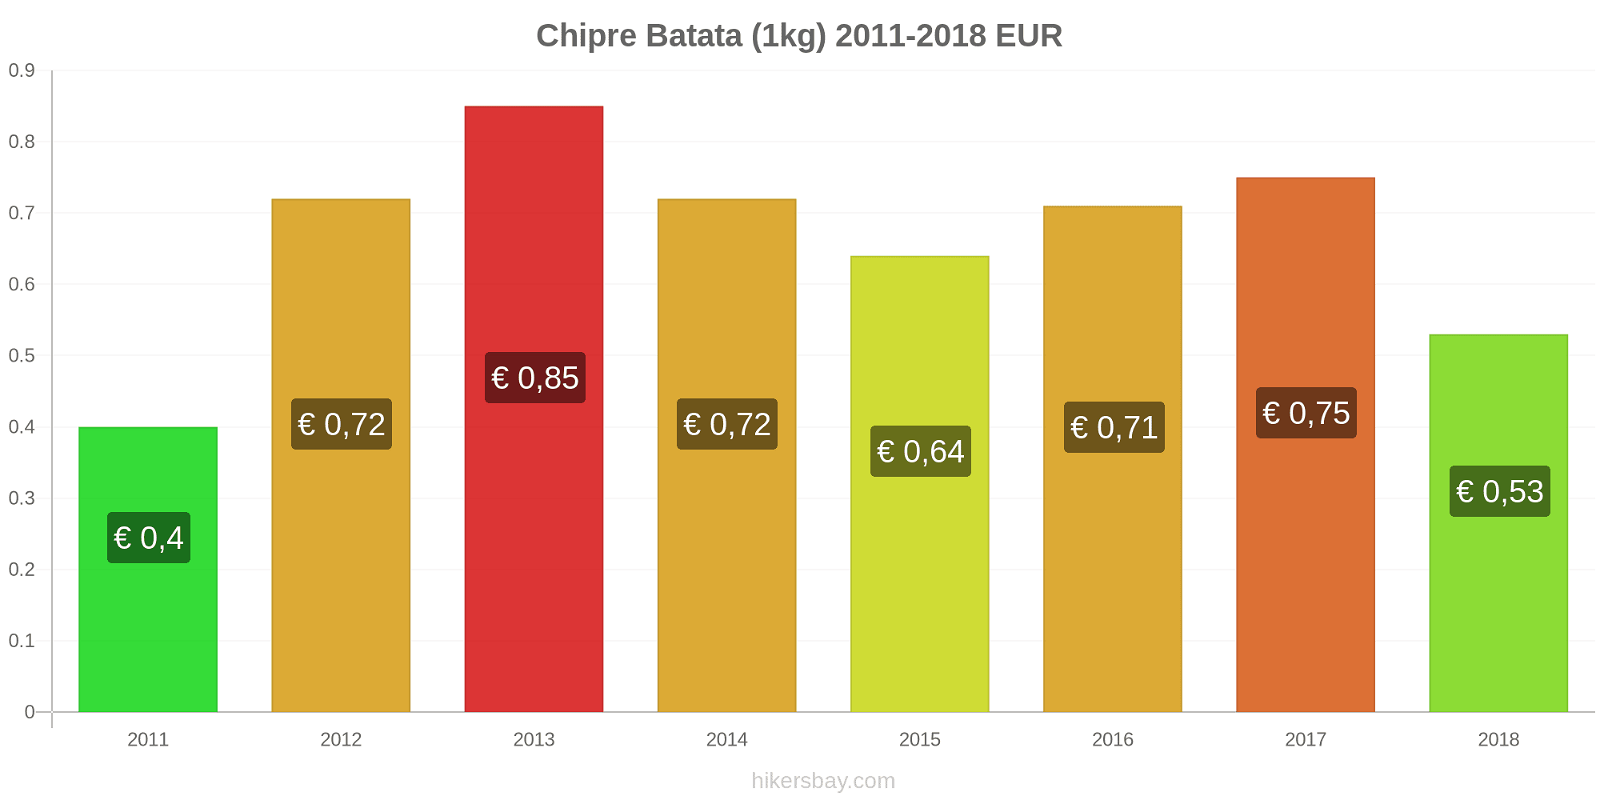 Chipre mudanças de preços Batatas (1kg) hikersbay.com